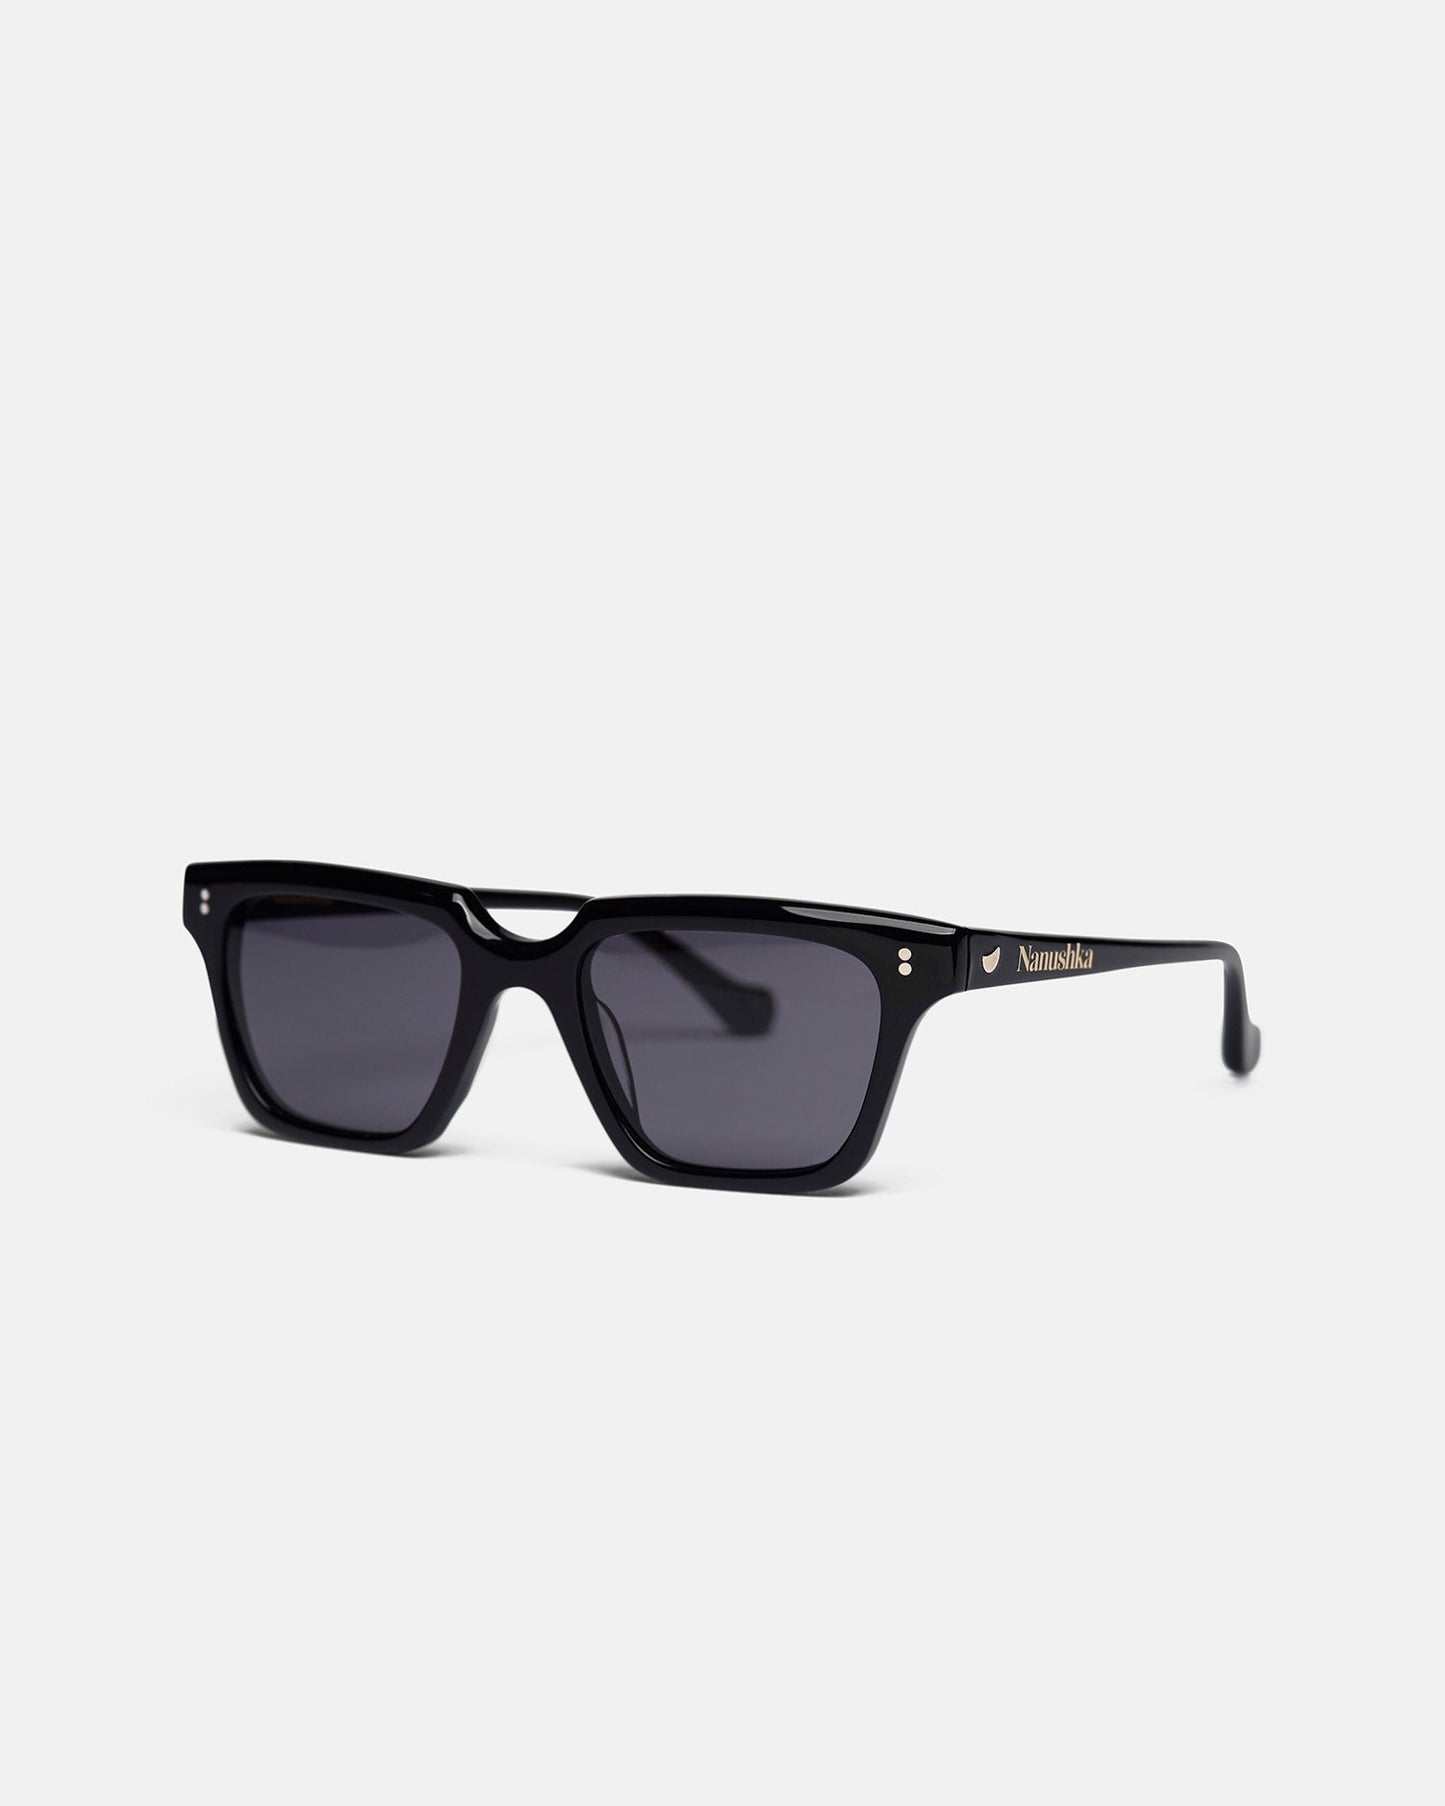 Cadao - Bio-Plastic Angular Sunglasses - Black